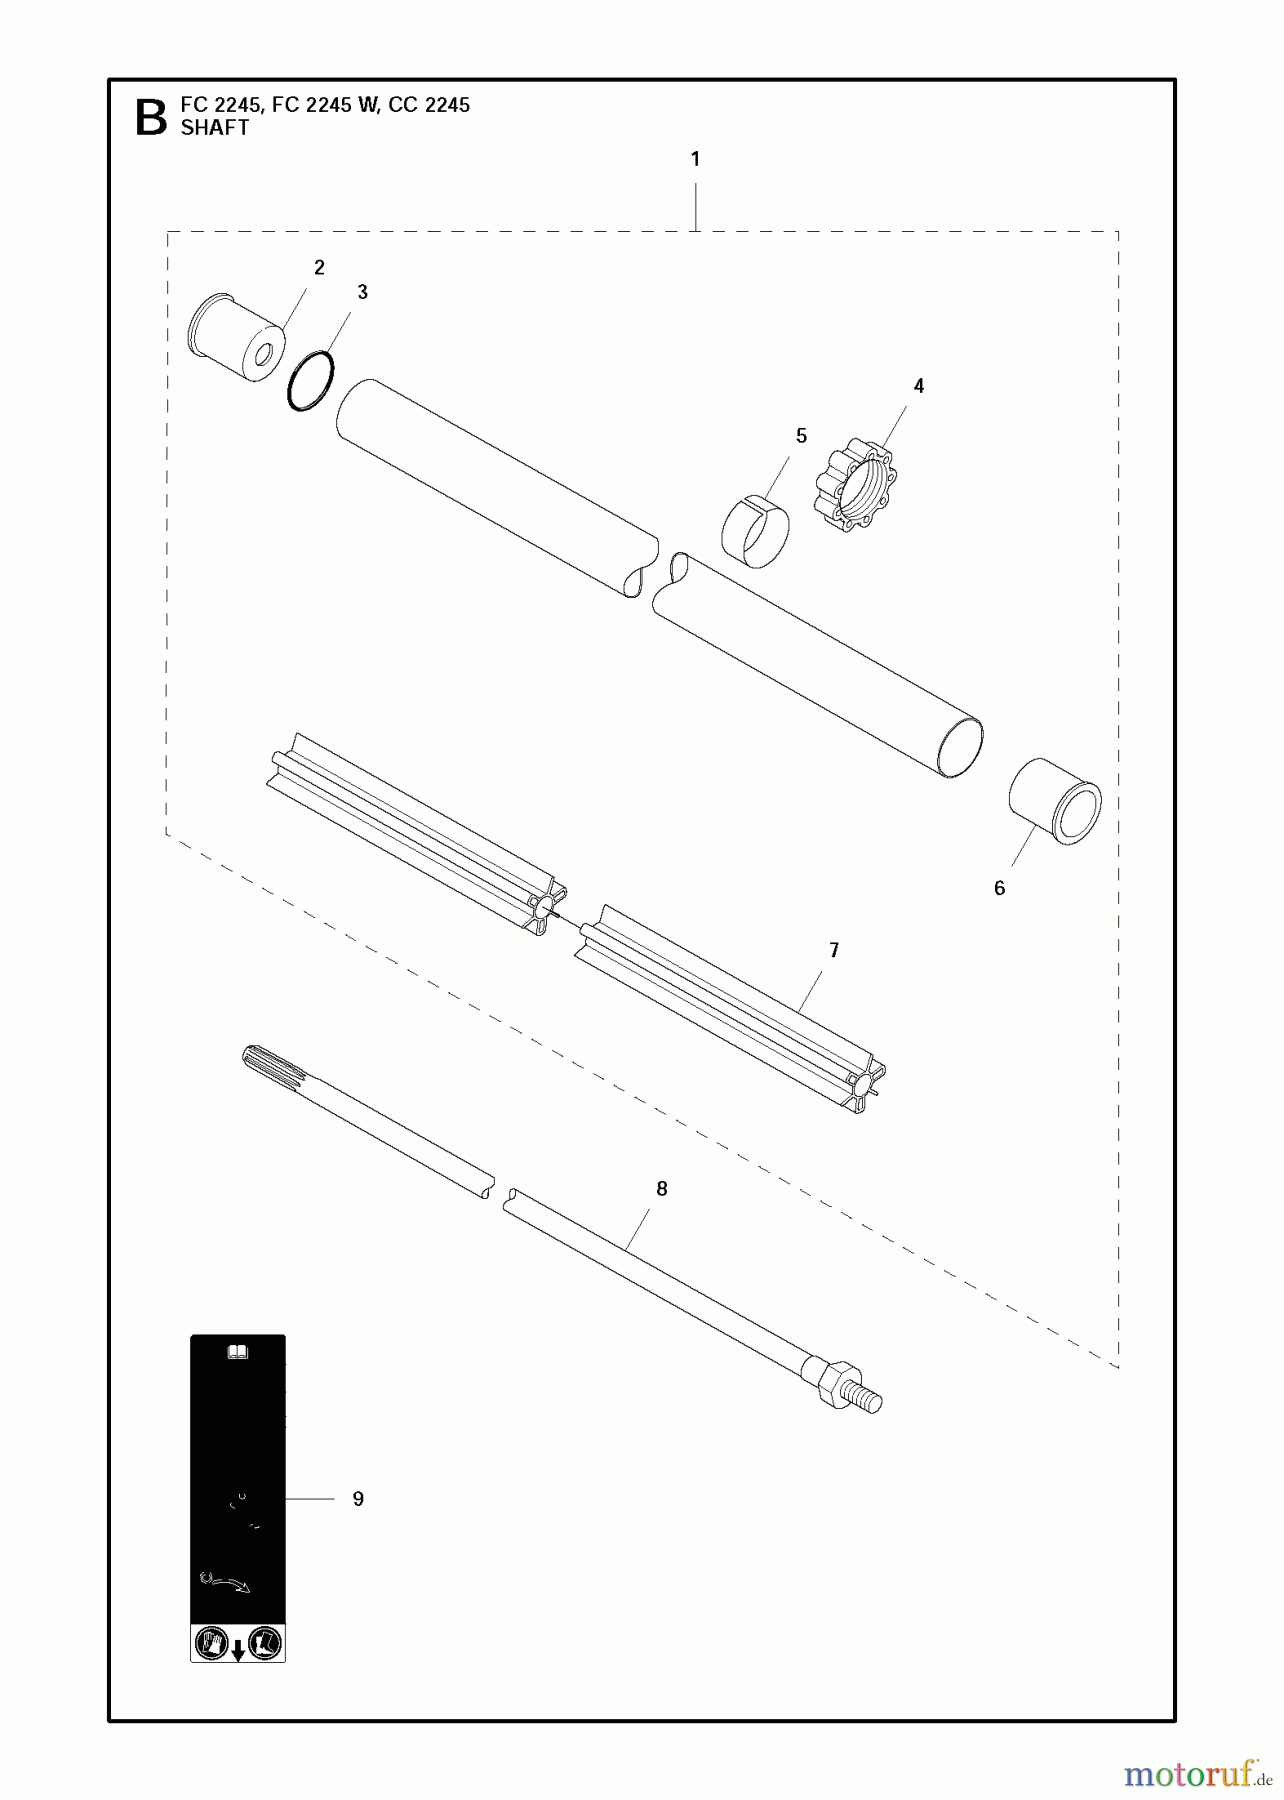  Jonsered Motorsensen, Trimmer FC2245 - Jonsered String/Brush Trimmer (2011-03) SHAFT